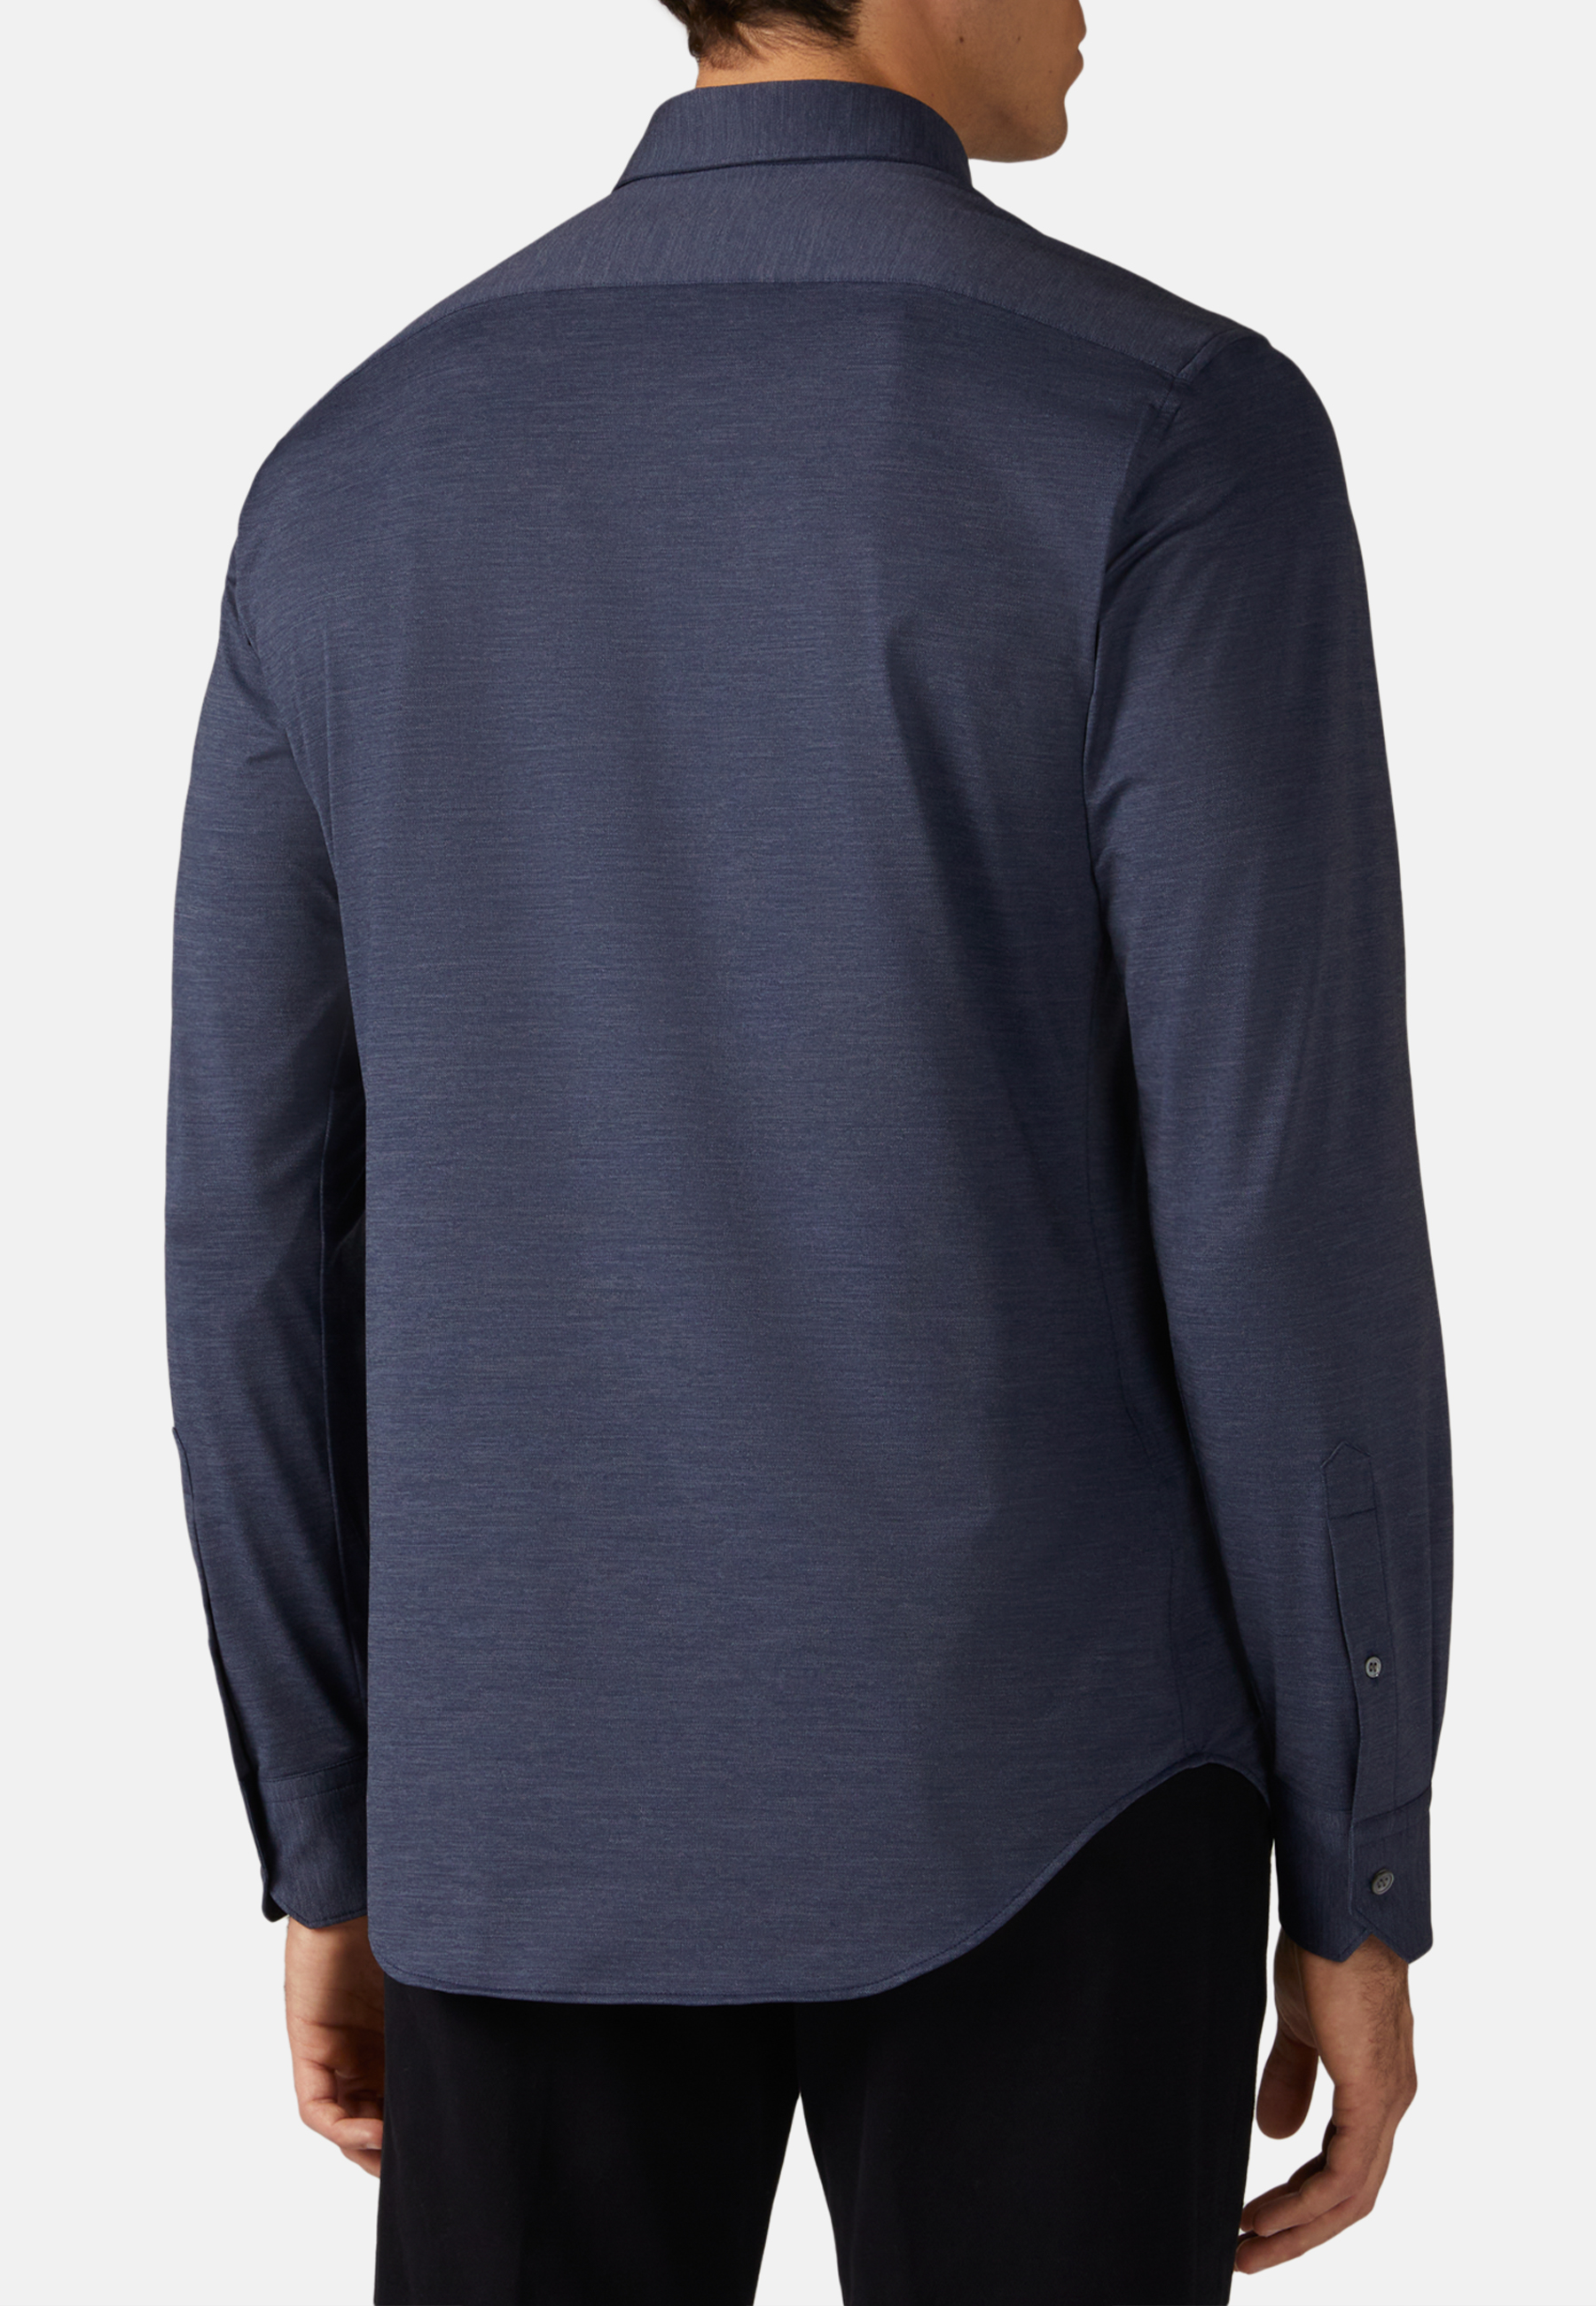 
Темно-синяя рубашка узкого кроя из эластичного нейлона для спорта и фитнеса – фото №  5